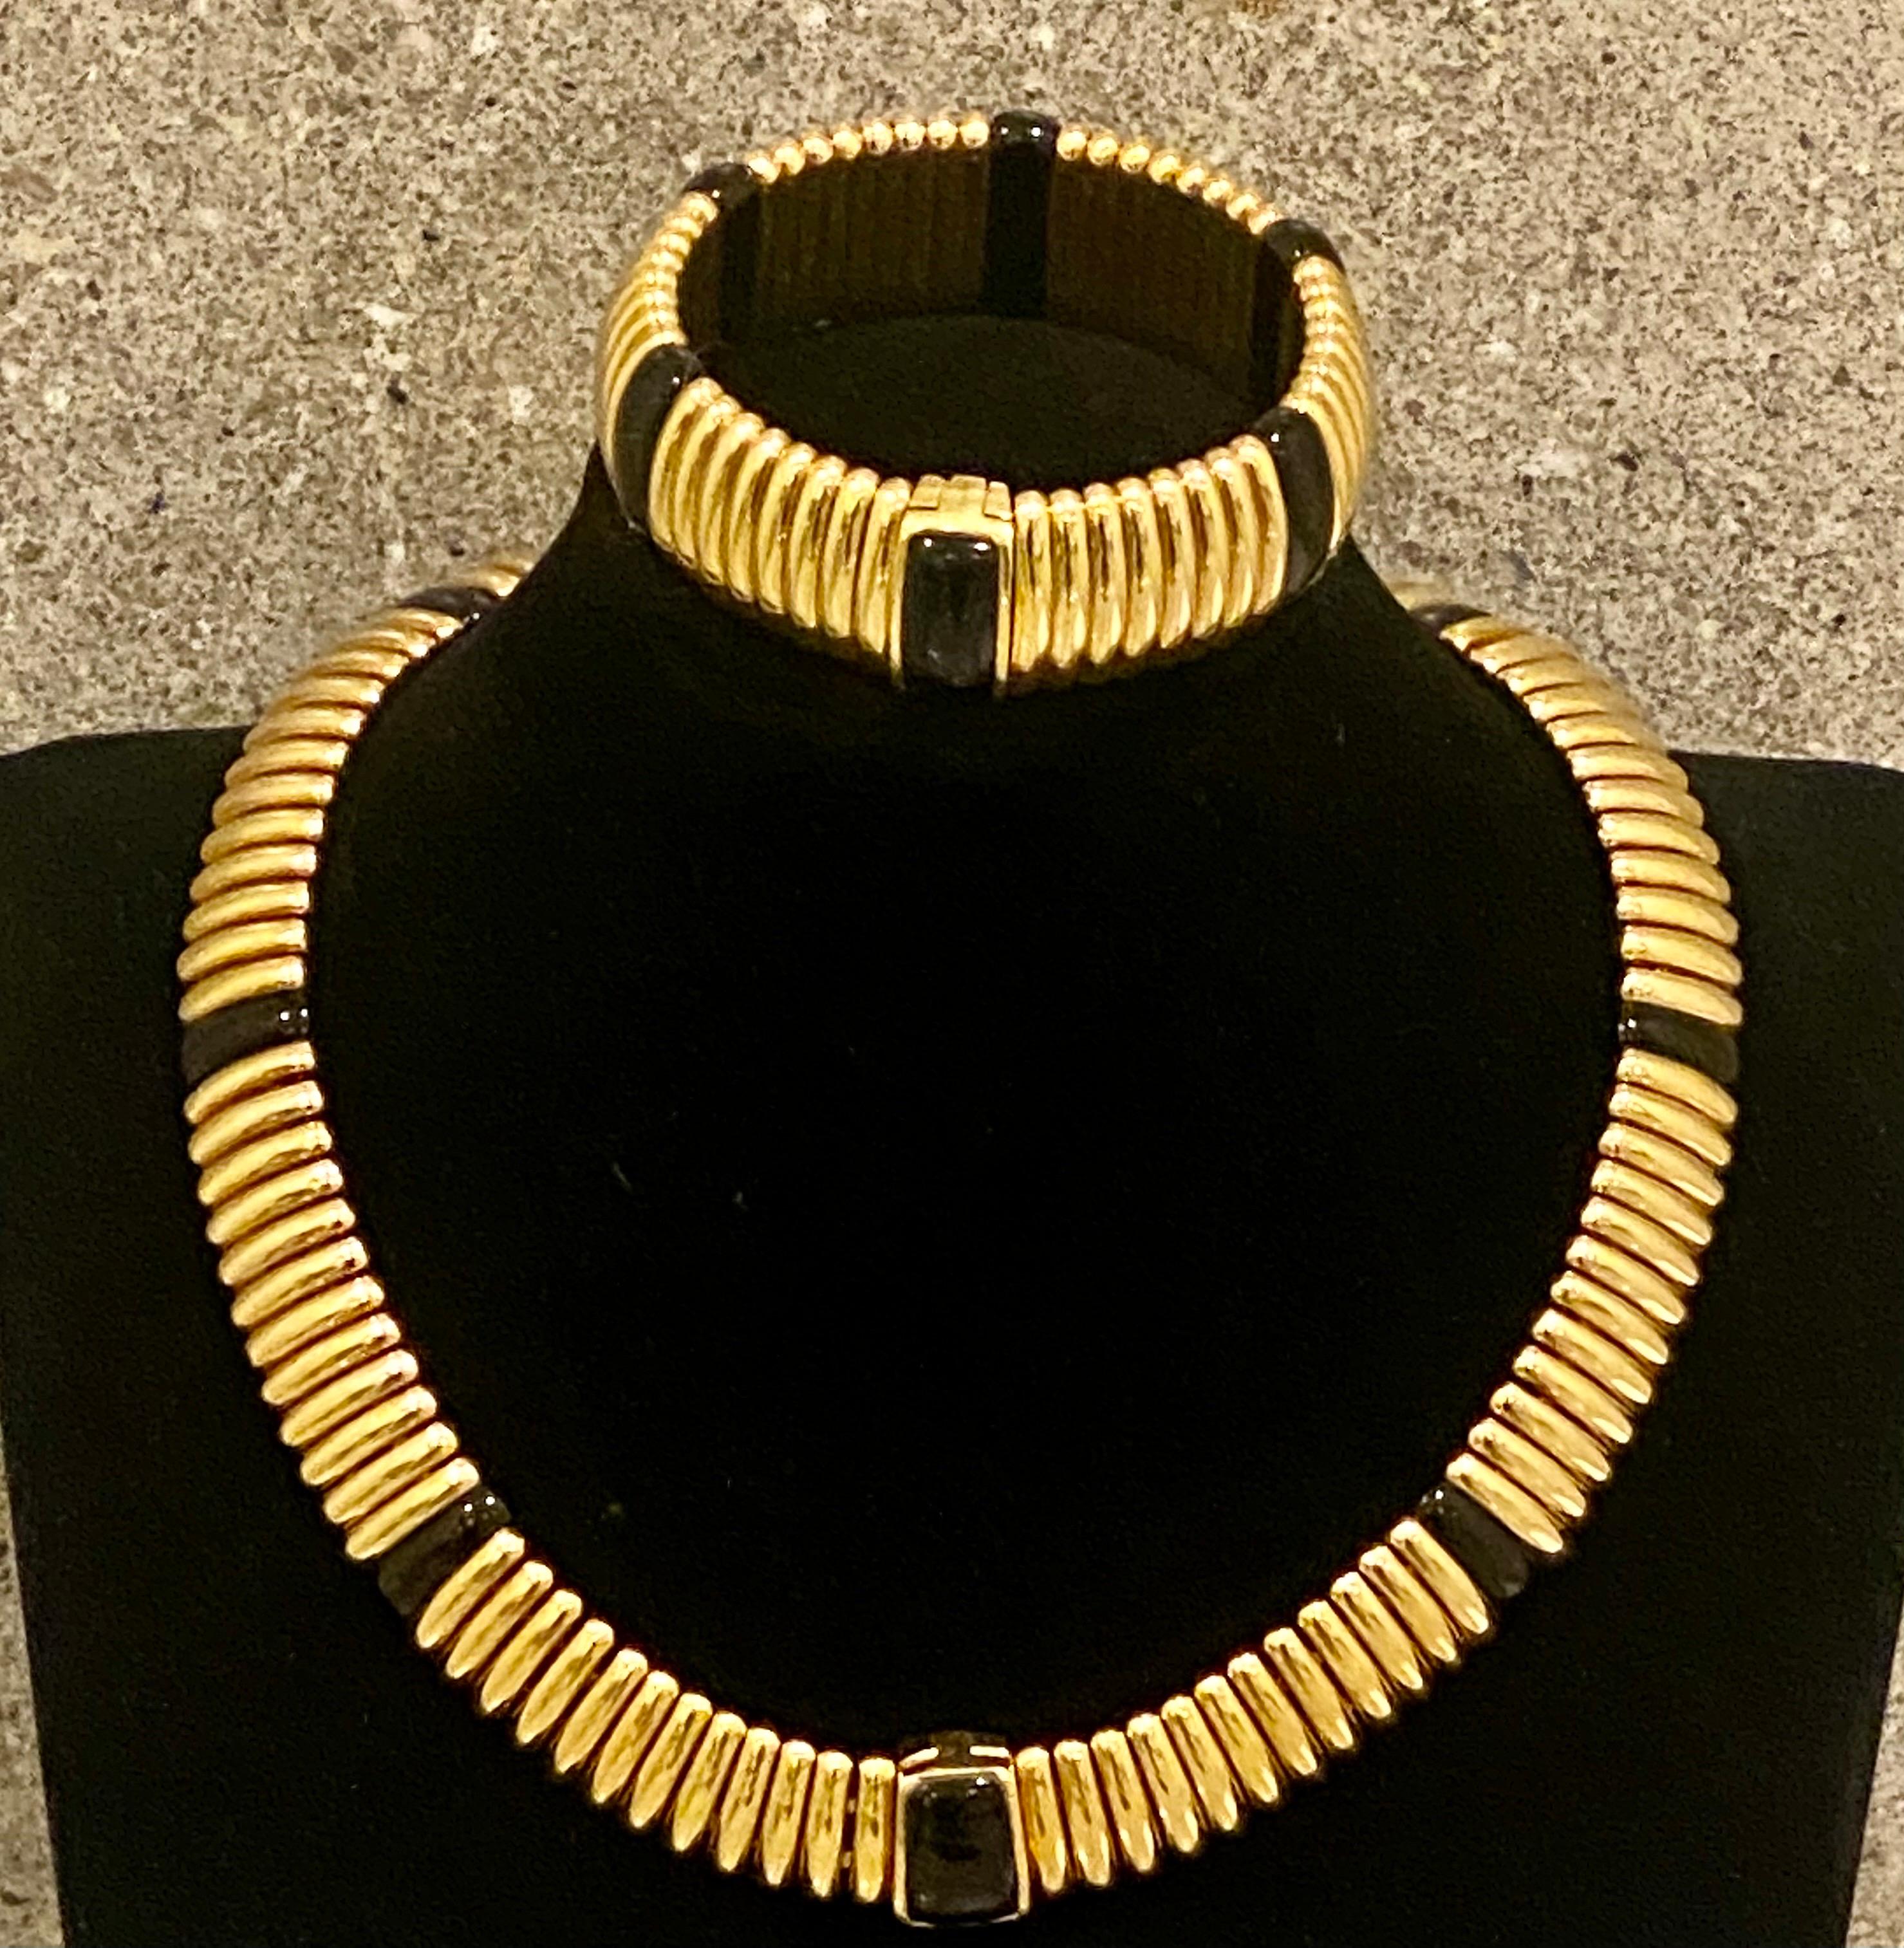 KRIA Gioielli Italienische 18K Gelbgold und Onyx Halskette und Armband Suite zeigt ein geripptes geometrisches Design akzentuiert mit Onyx Plaques mit versteckten Verschlüssen mit einem sehr sicheren Verschluss. Unterzeichnet 'KRIA 750.
Abmessungen: